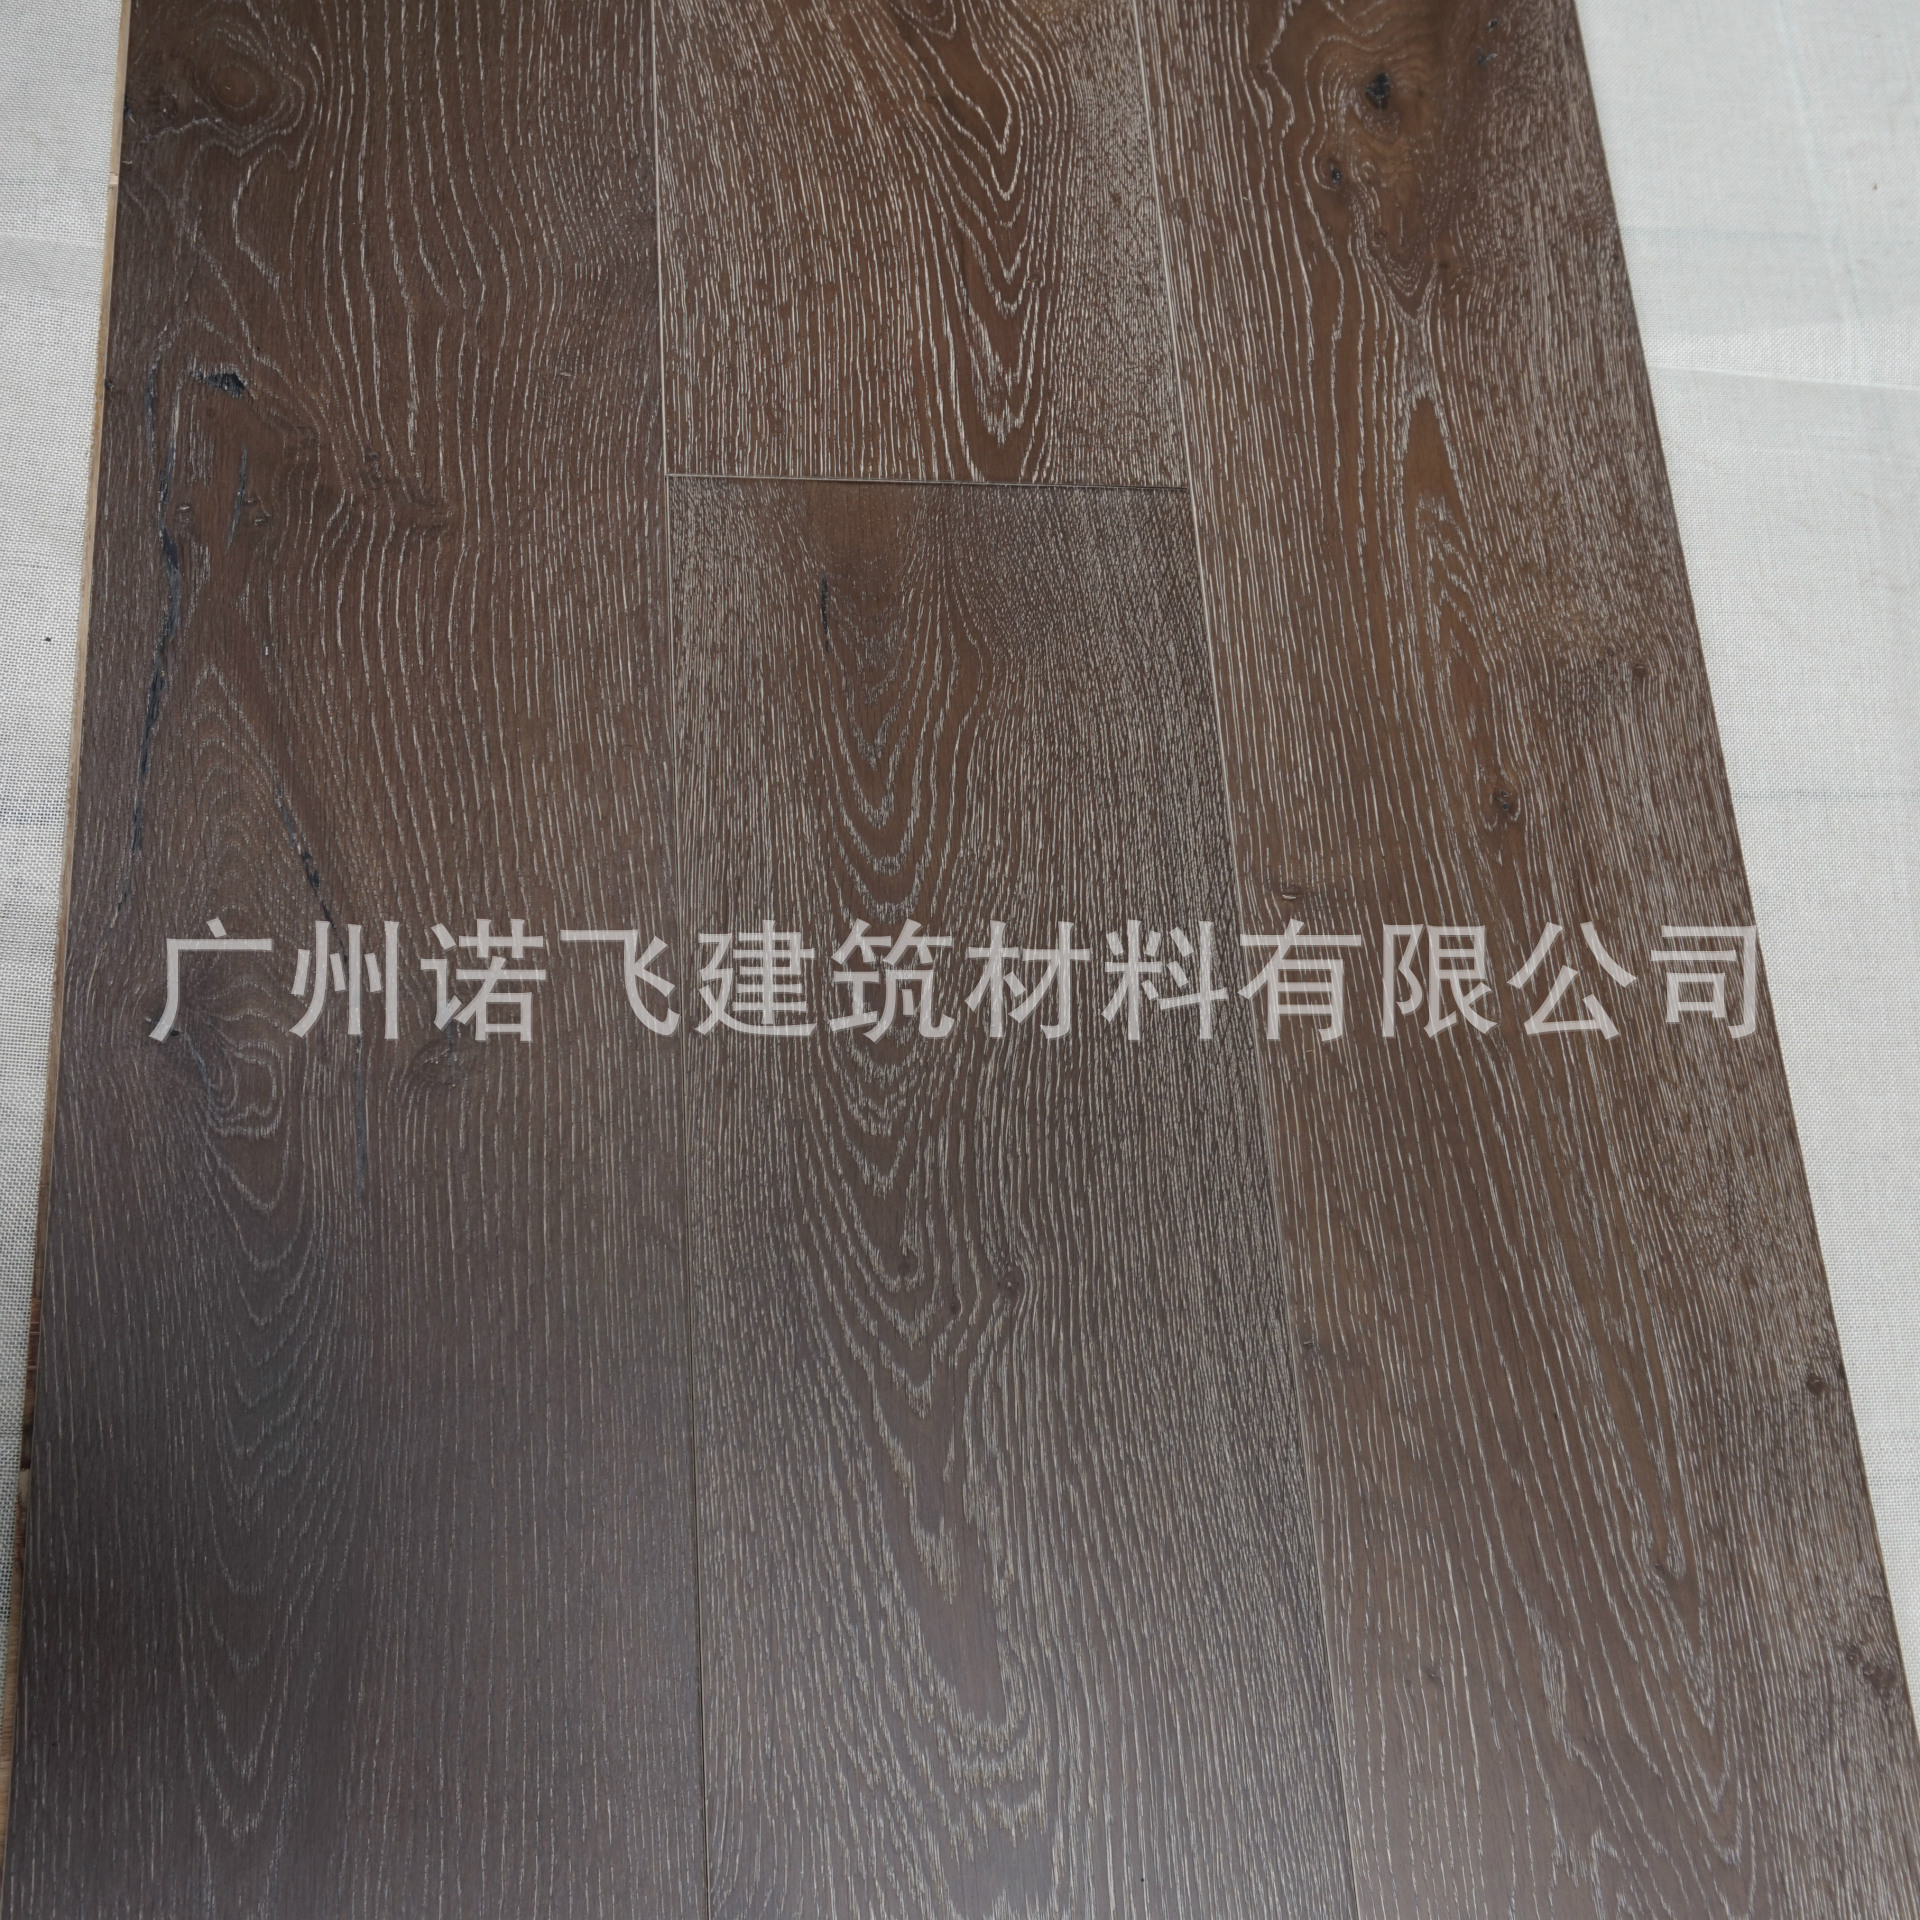 出口多层实木橡木木地板15mm 欧橡多层/三层实木地板烟熏拉丝耐磨